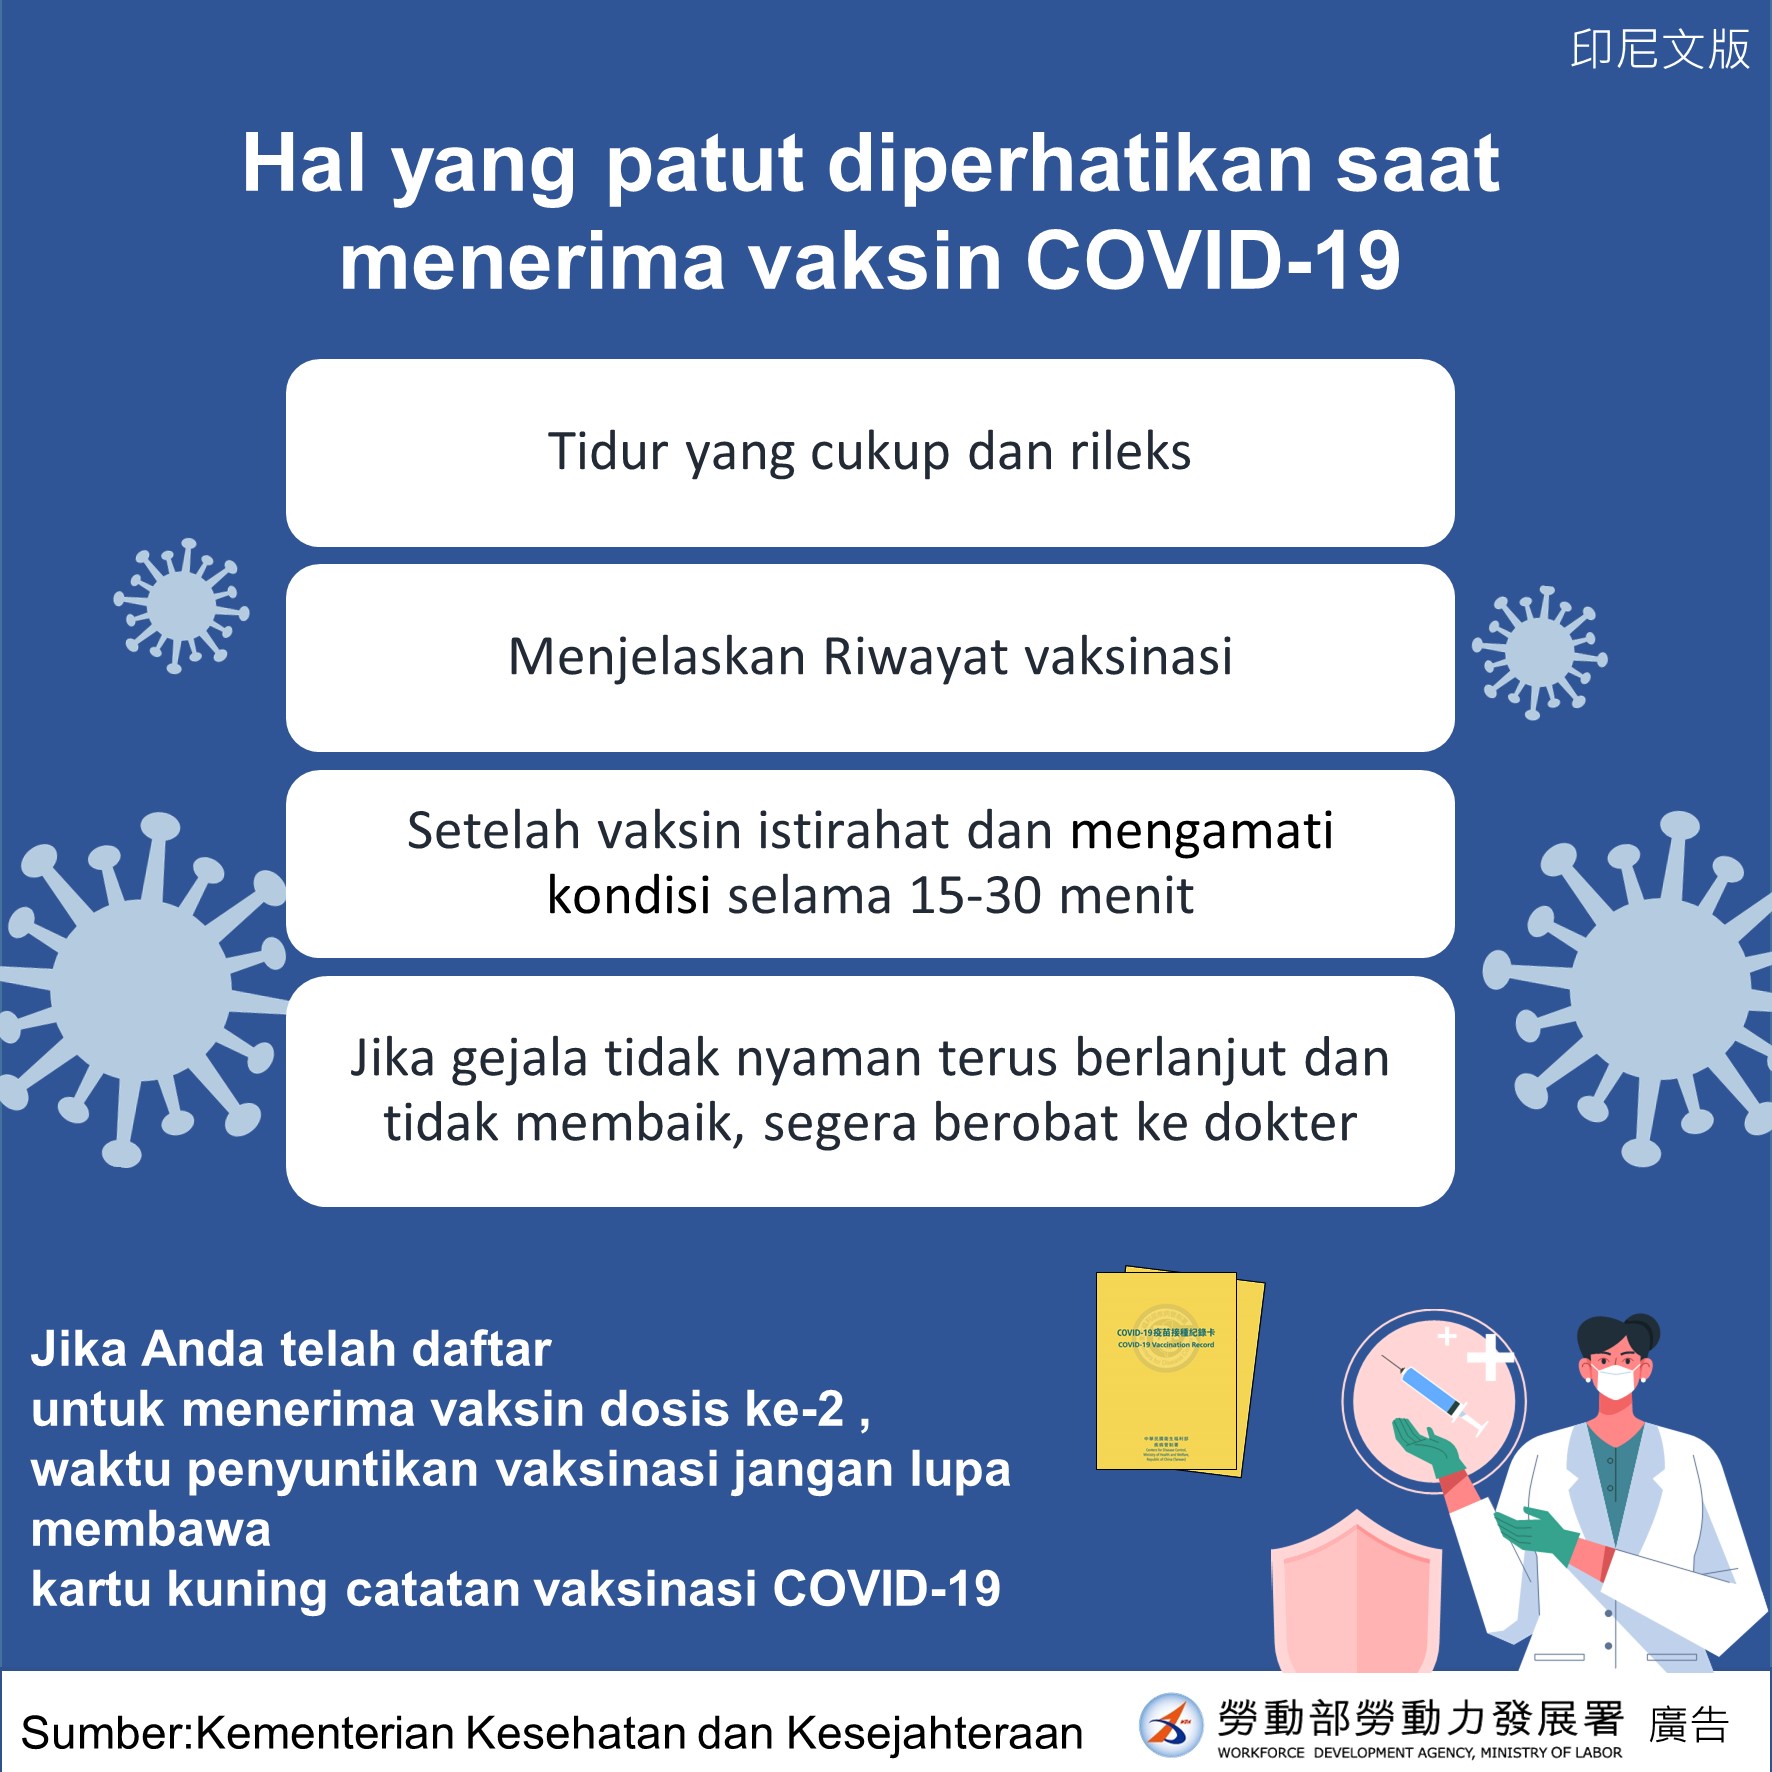 接種COVID-19疫苗注意事項-印尼文